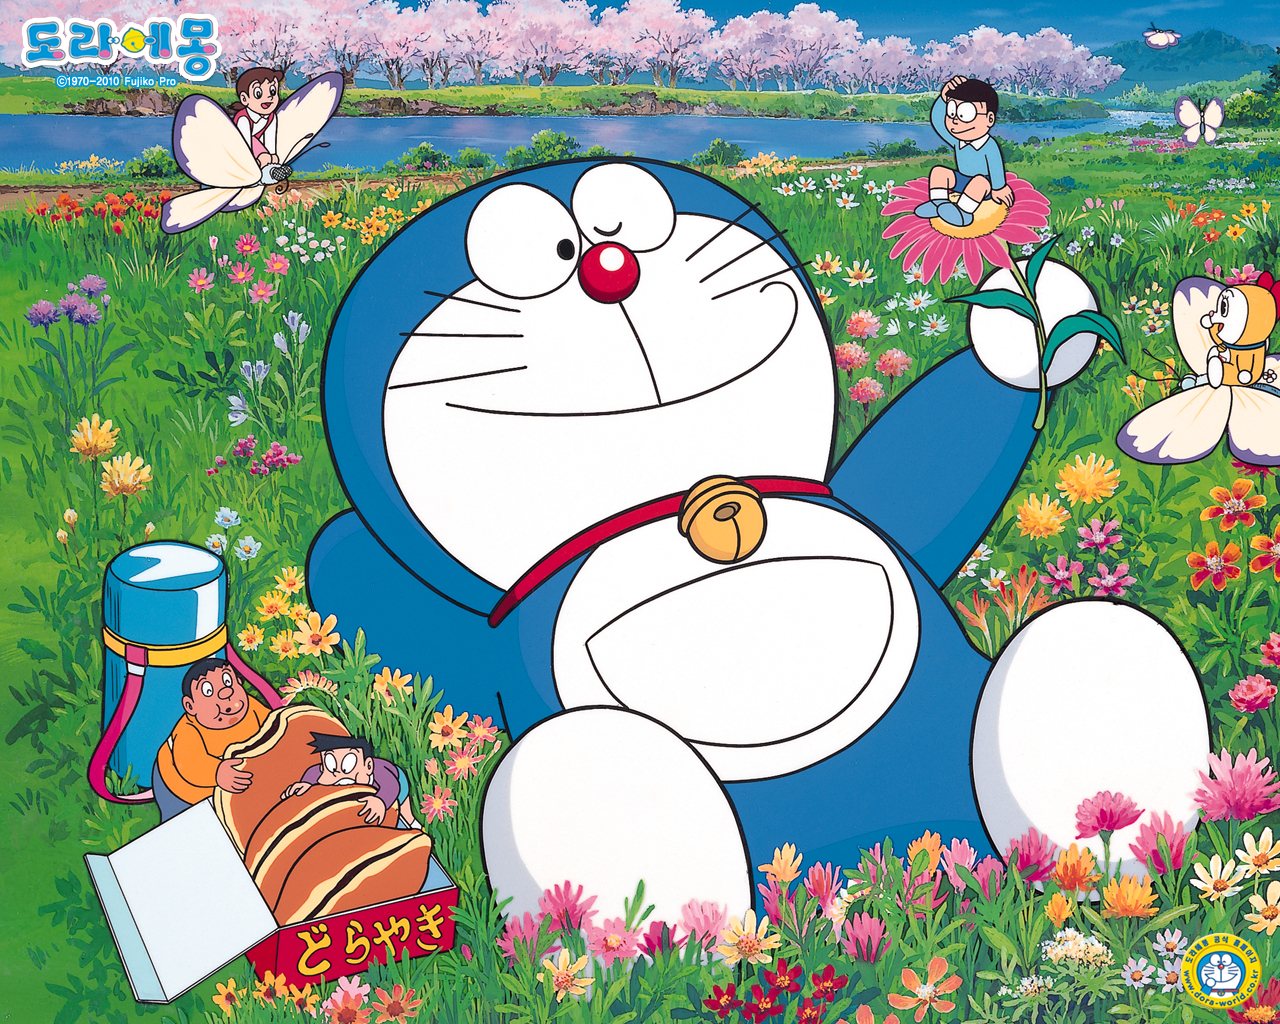 Giờ đây, bạn có thể mang theo Doraemon cùng bạn bất cứ khi nào và ở đâu bạn muốn với bộ sưu tập hình nền Doraemon dành cho điện thoại di động. Với độ phân giải cao, màu sắc sống động và hình ảnh tuyệt đẹp, những bức ảnh này sẽ khiến cho điện thoại của bạn thêm phần sinh động và đáng yêu.